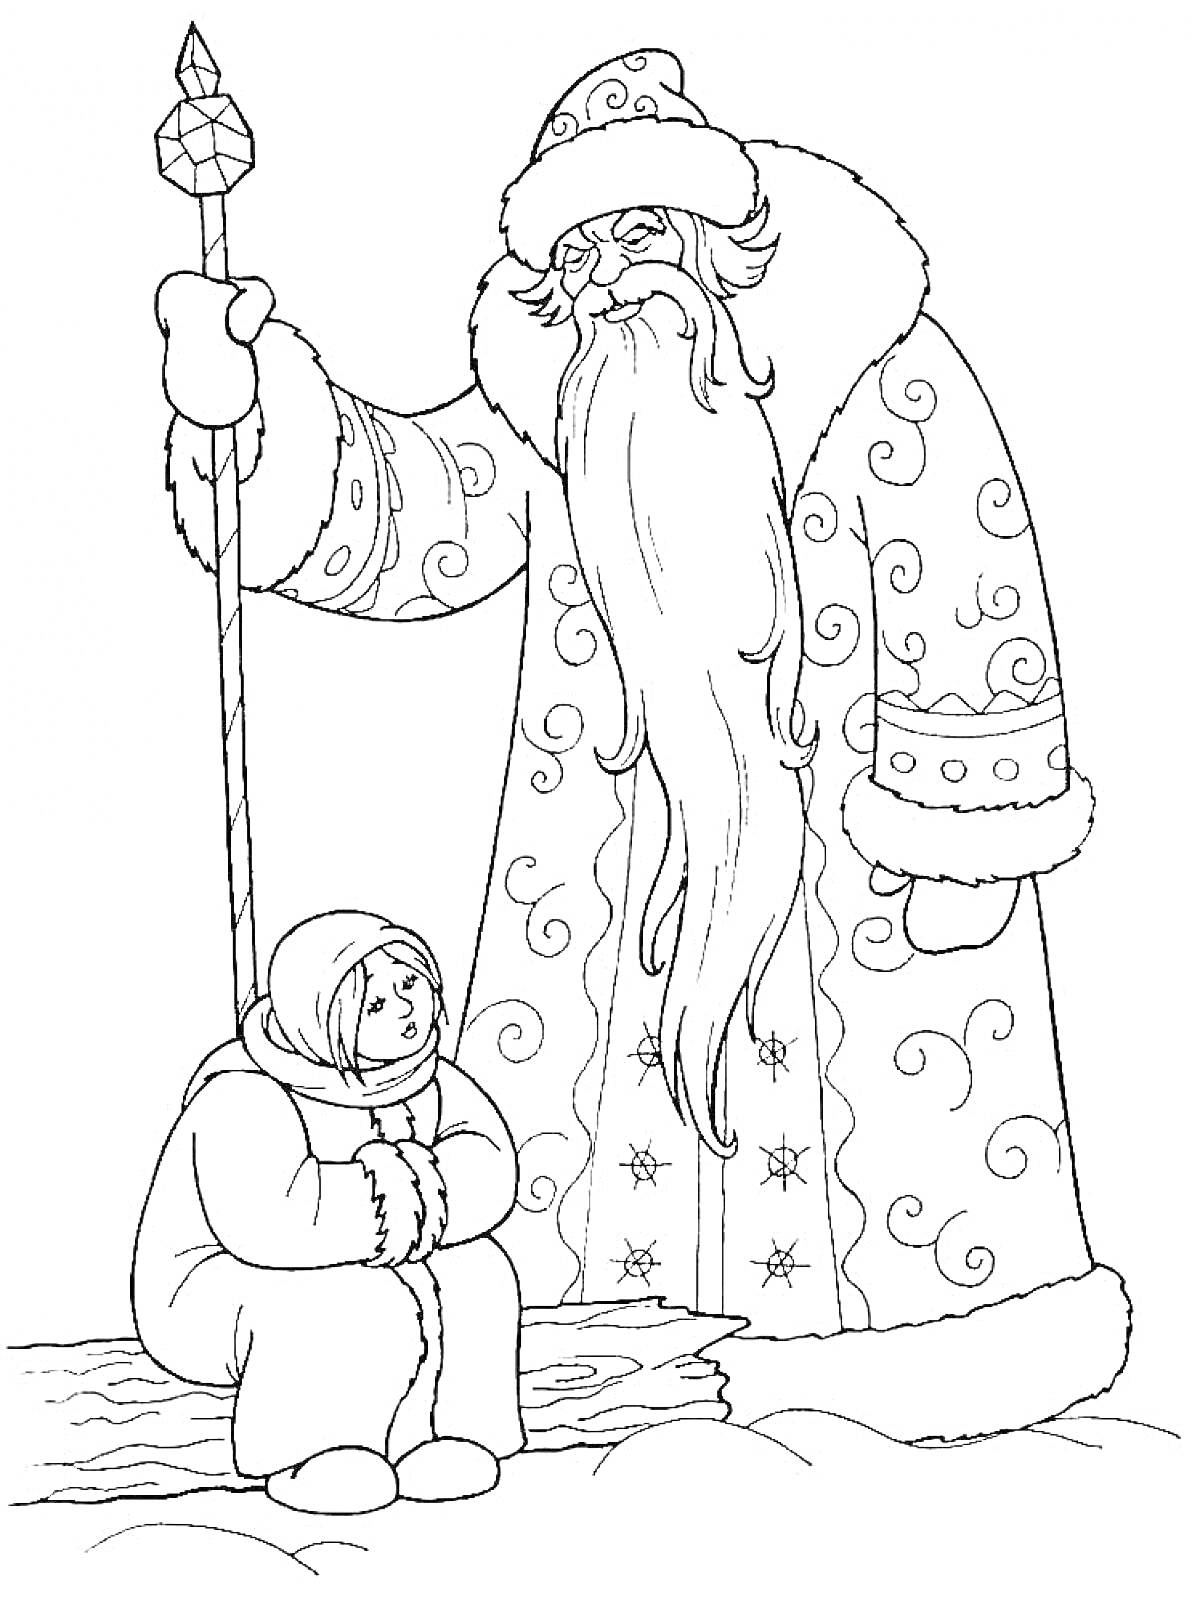 Раскраска Морозко с посохом и девушка на снегу